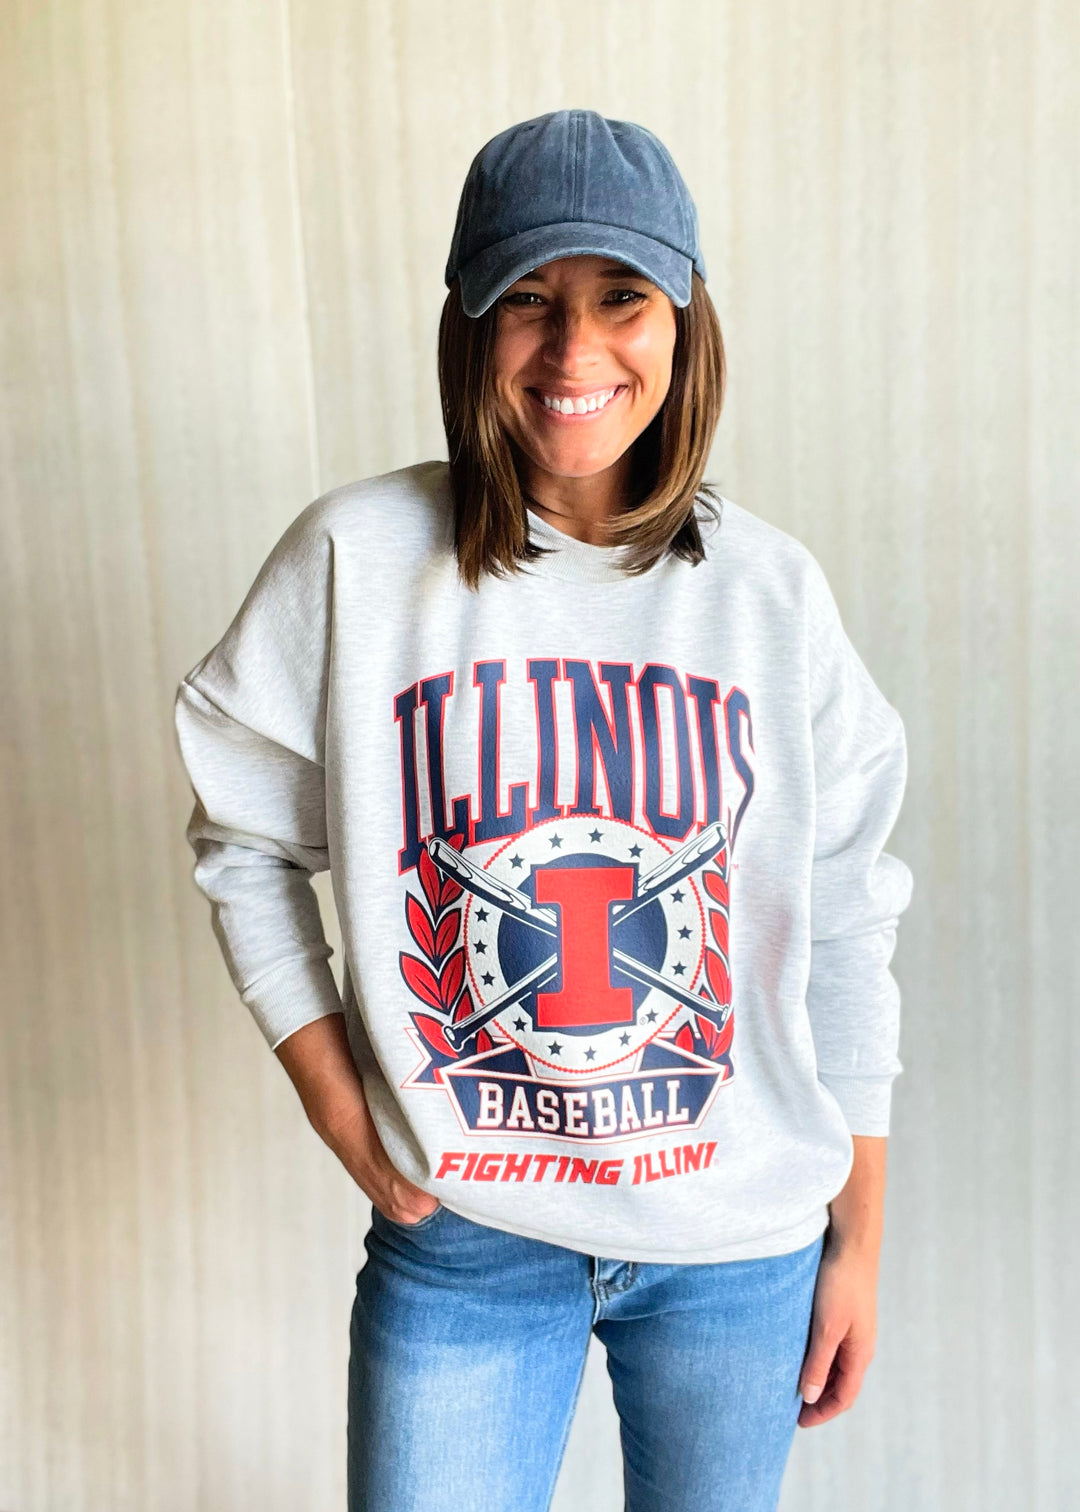 Women's Illinois Fighting Illini Baseball Crew Neck Sweatshirt